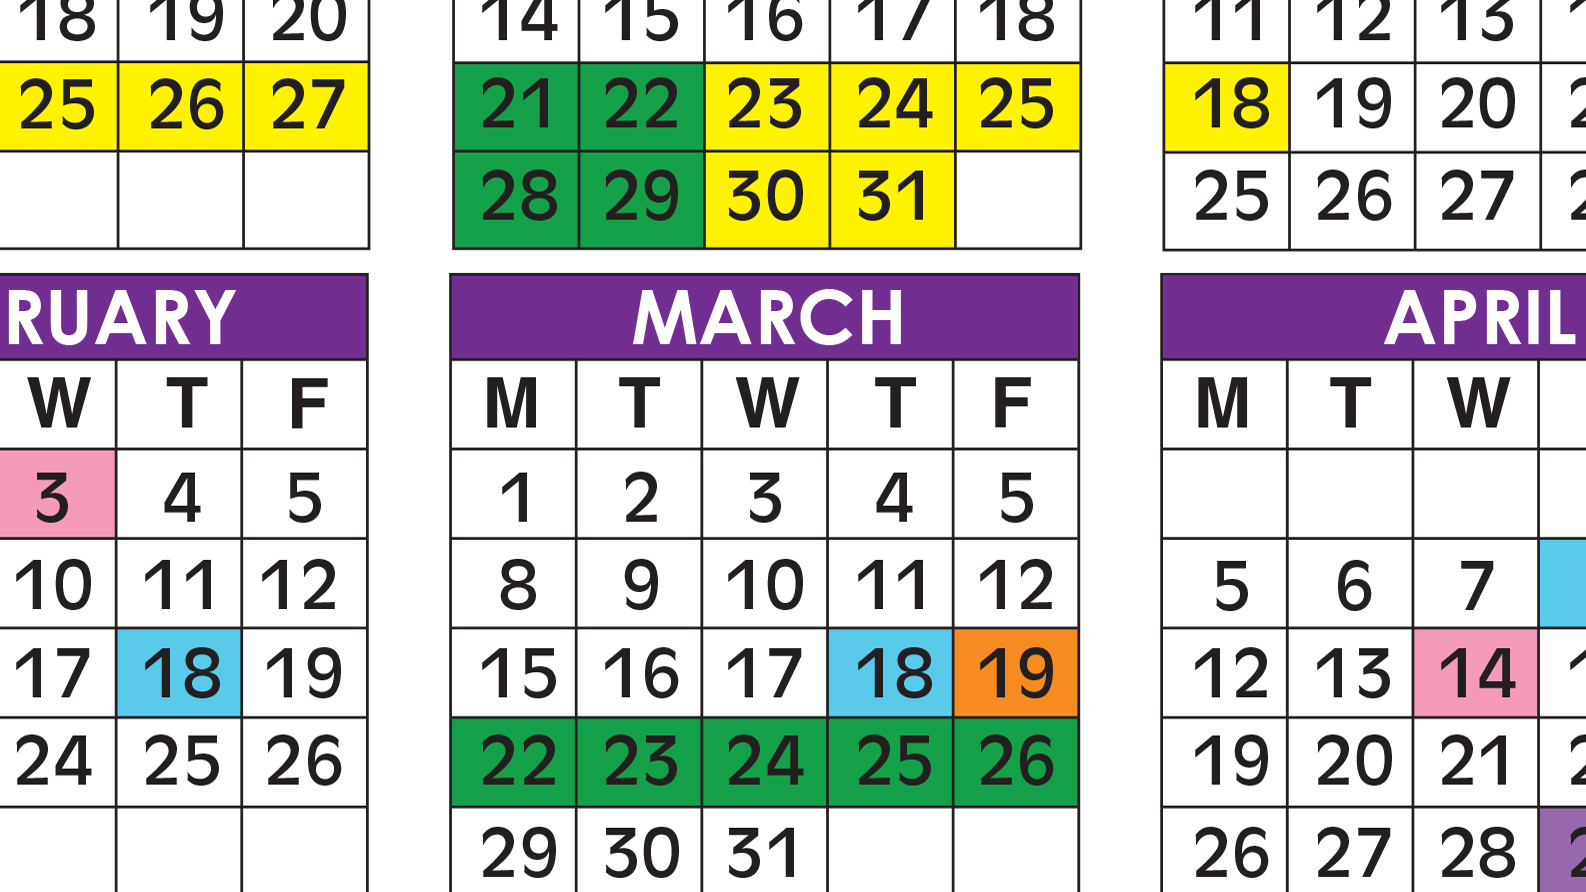 Broward Schools Calendar 2021 Printable March